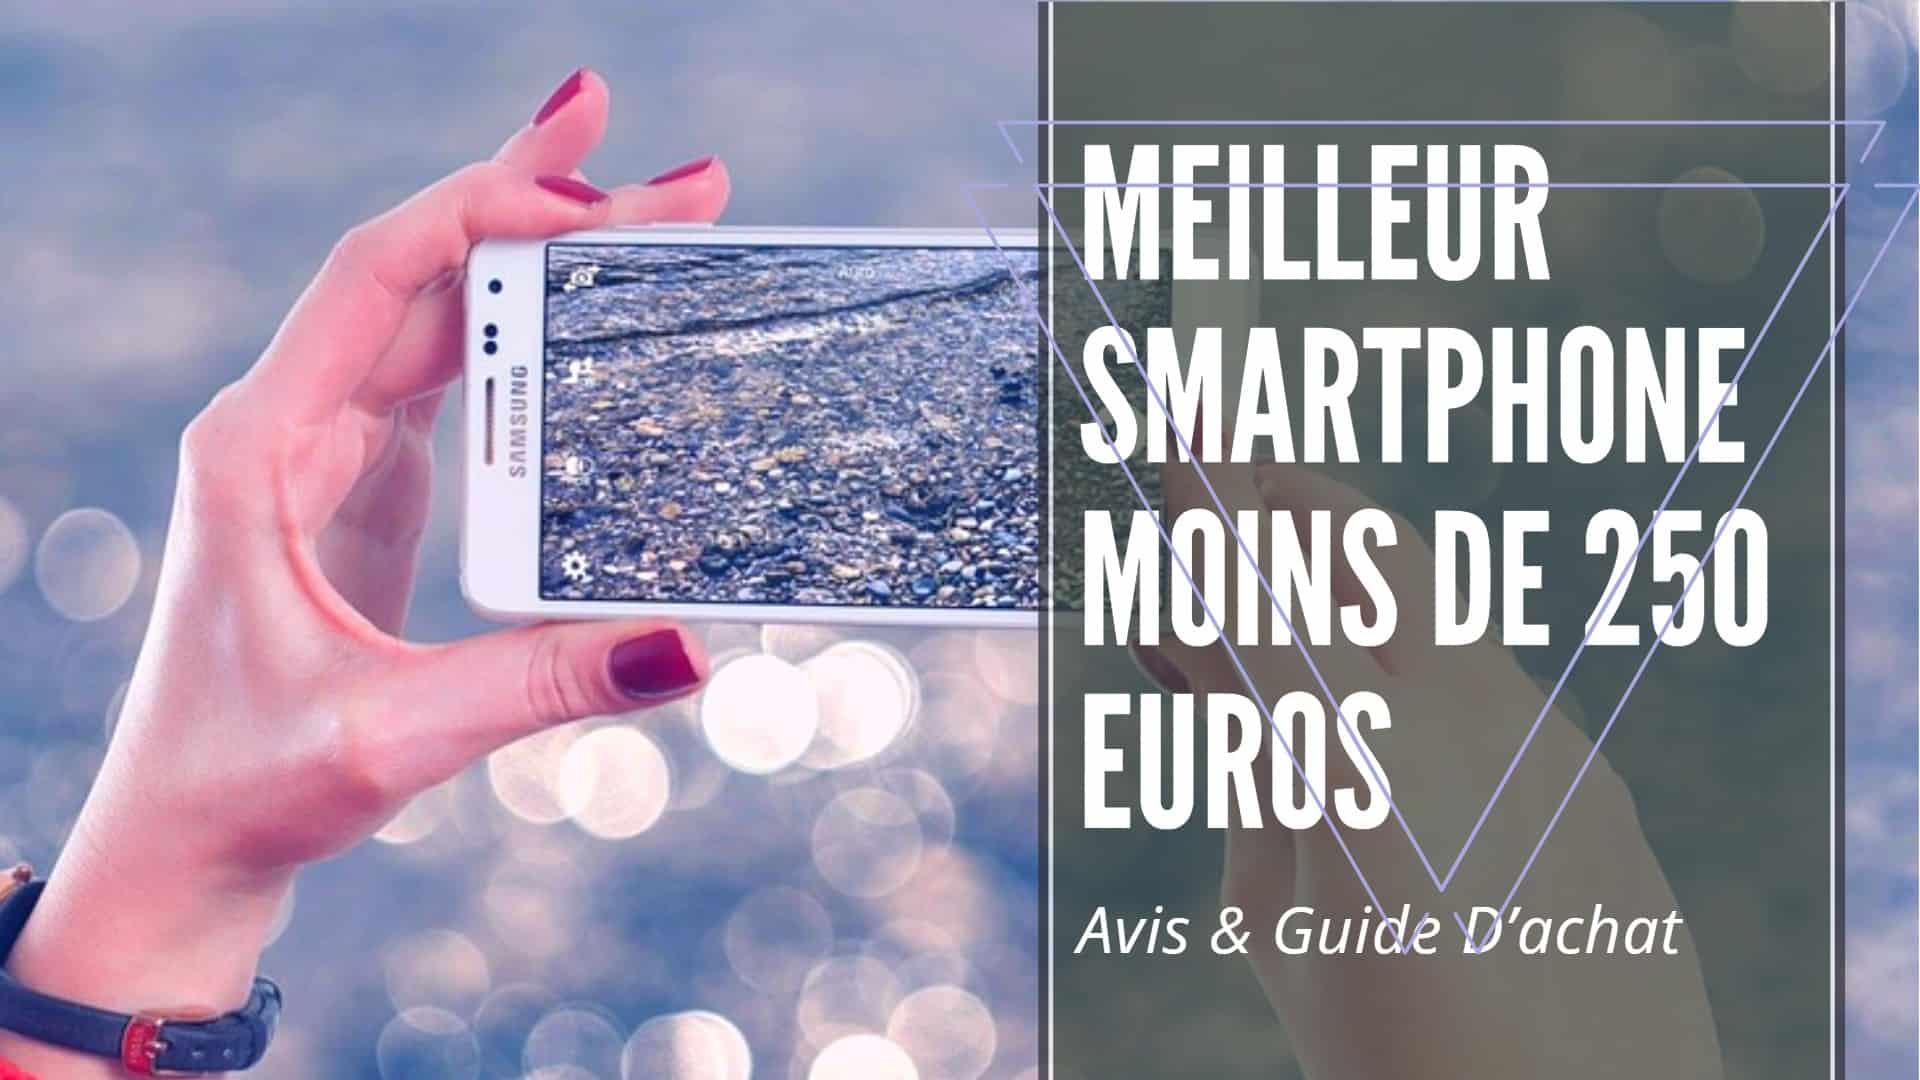 Meilleur Smartphone Moins De 250 Euros